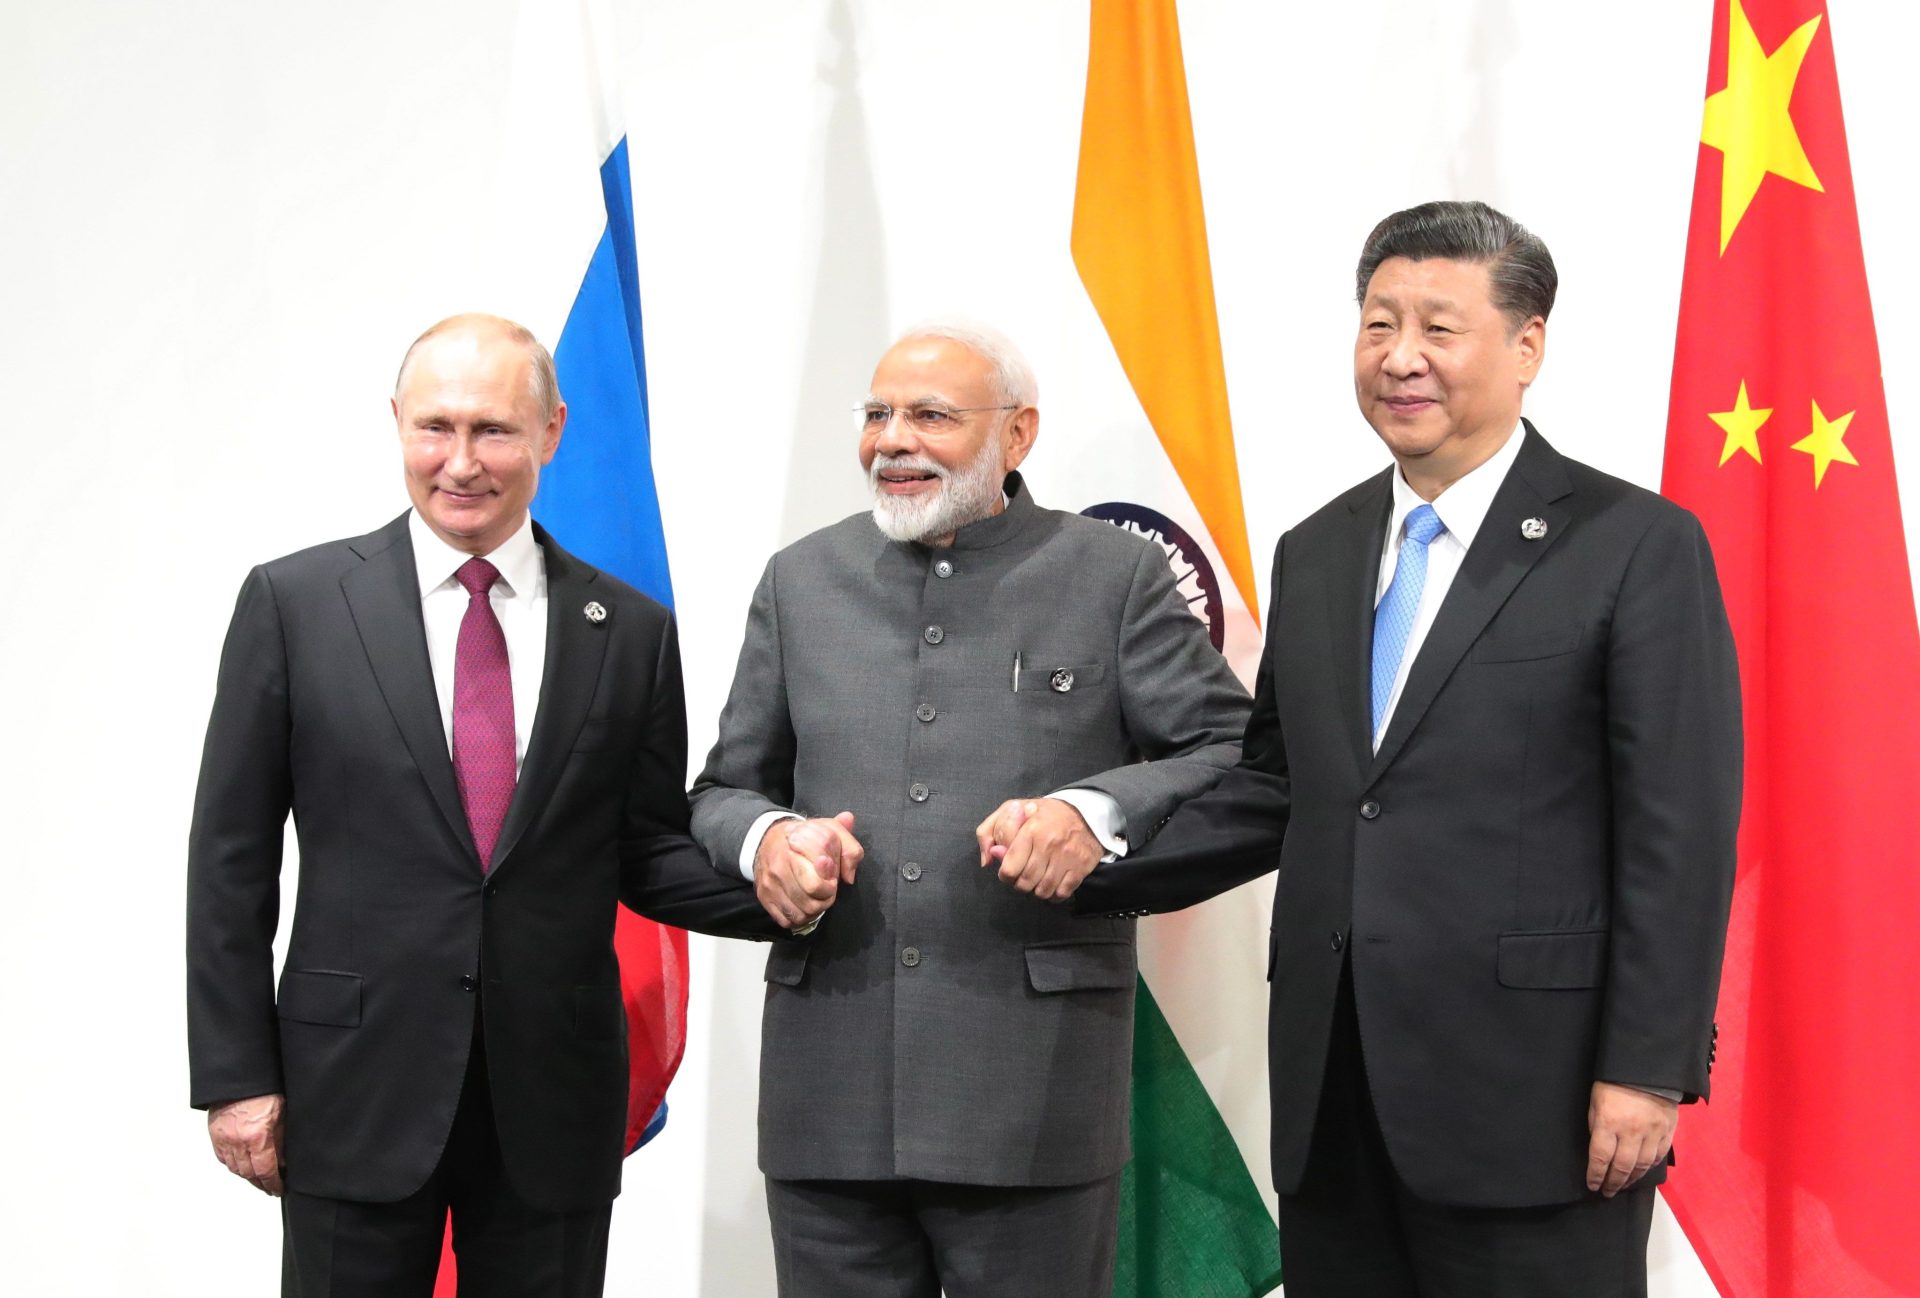 El presidente ruso Vladimir Putin (i), el primer ministro indio Narendra Modi (c) y el presidente chino Xi Jinping (d) posan durante una reunión trilateral celebrada en el marco de la cumbre del G20 en Osaka, Japón.